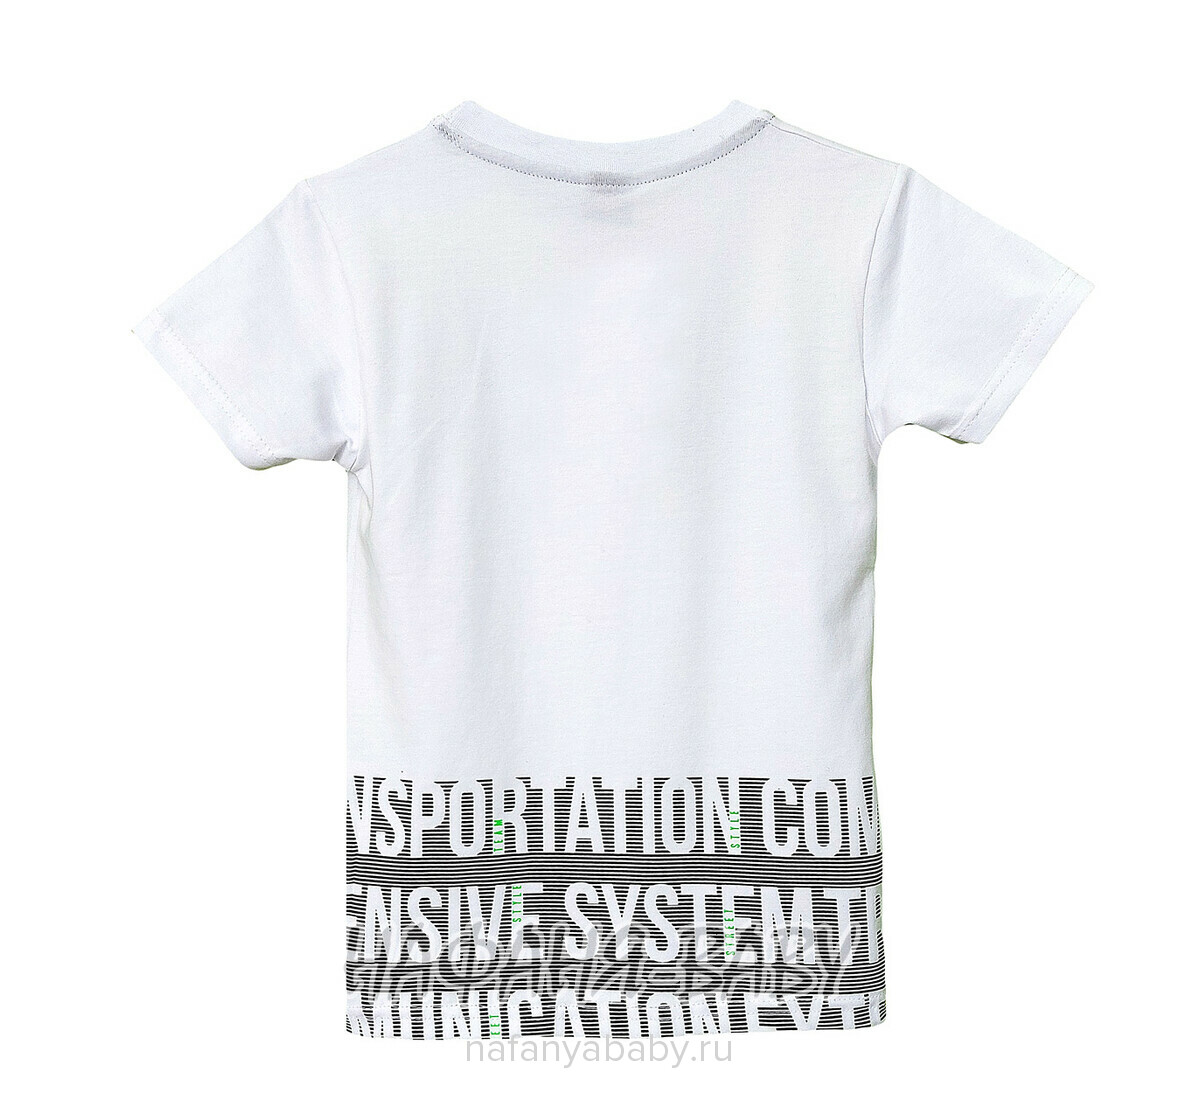 Подростковая футболка RCW арт. 5834, 10-14 лет, цвет белый, оптом Турция